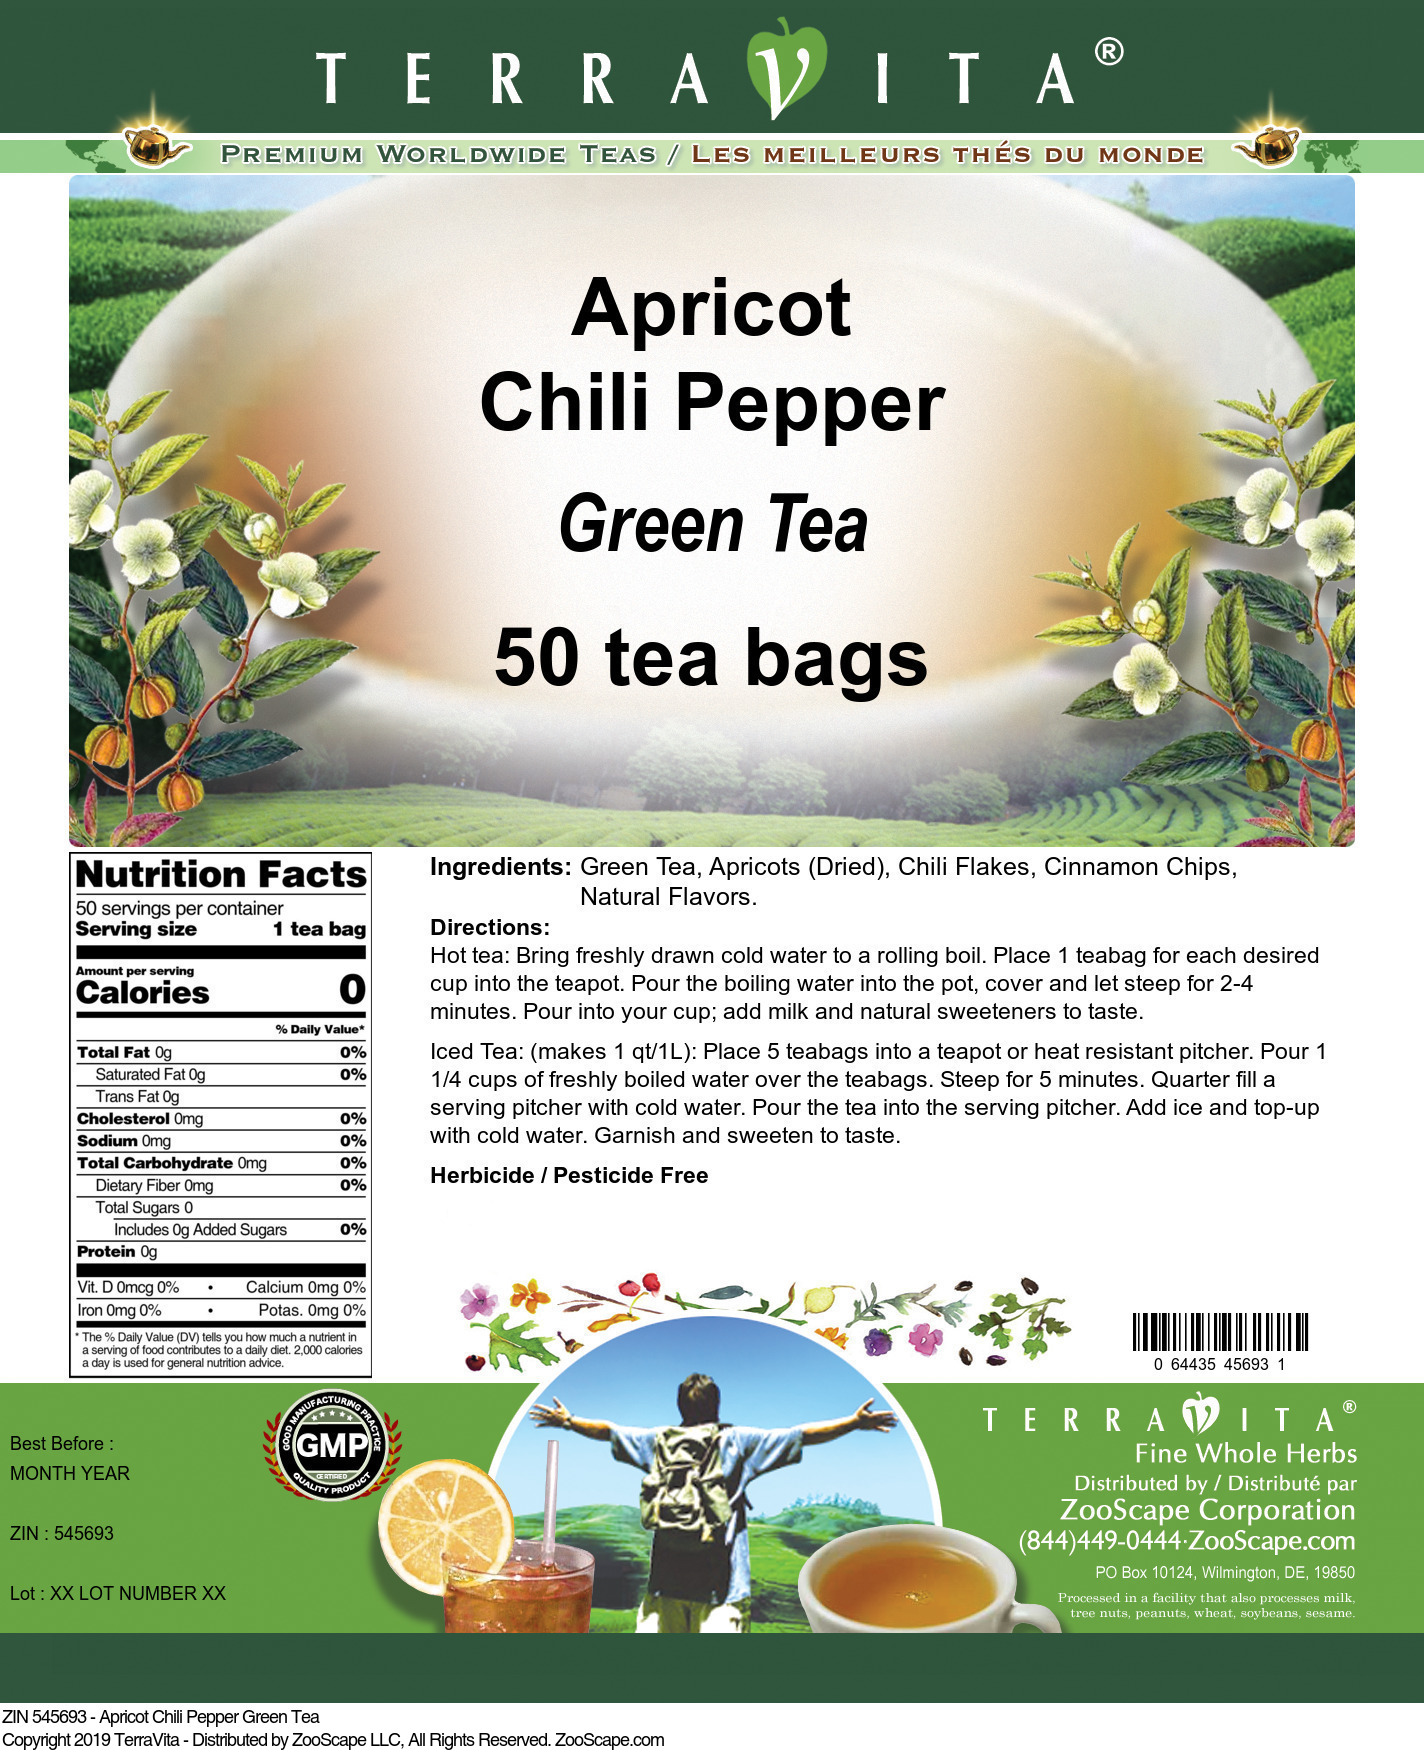 Apricot Chili Pepper Green Tea - Label